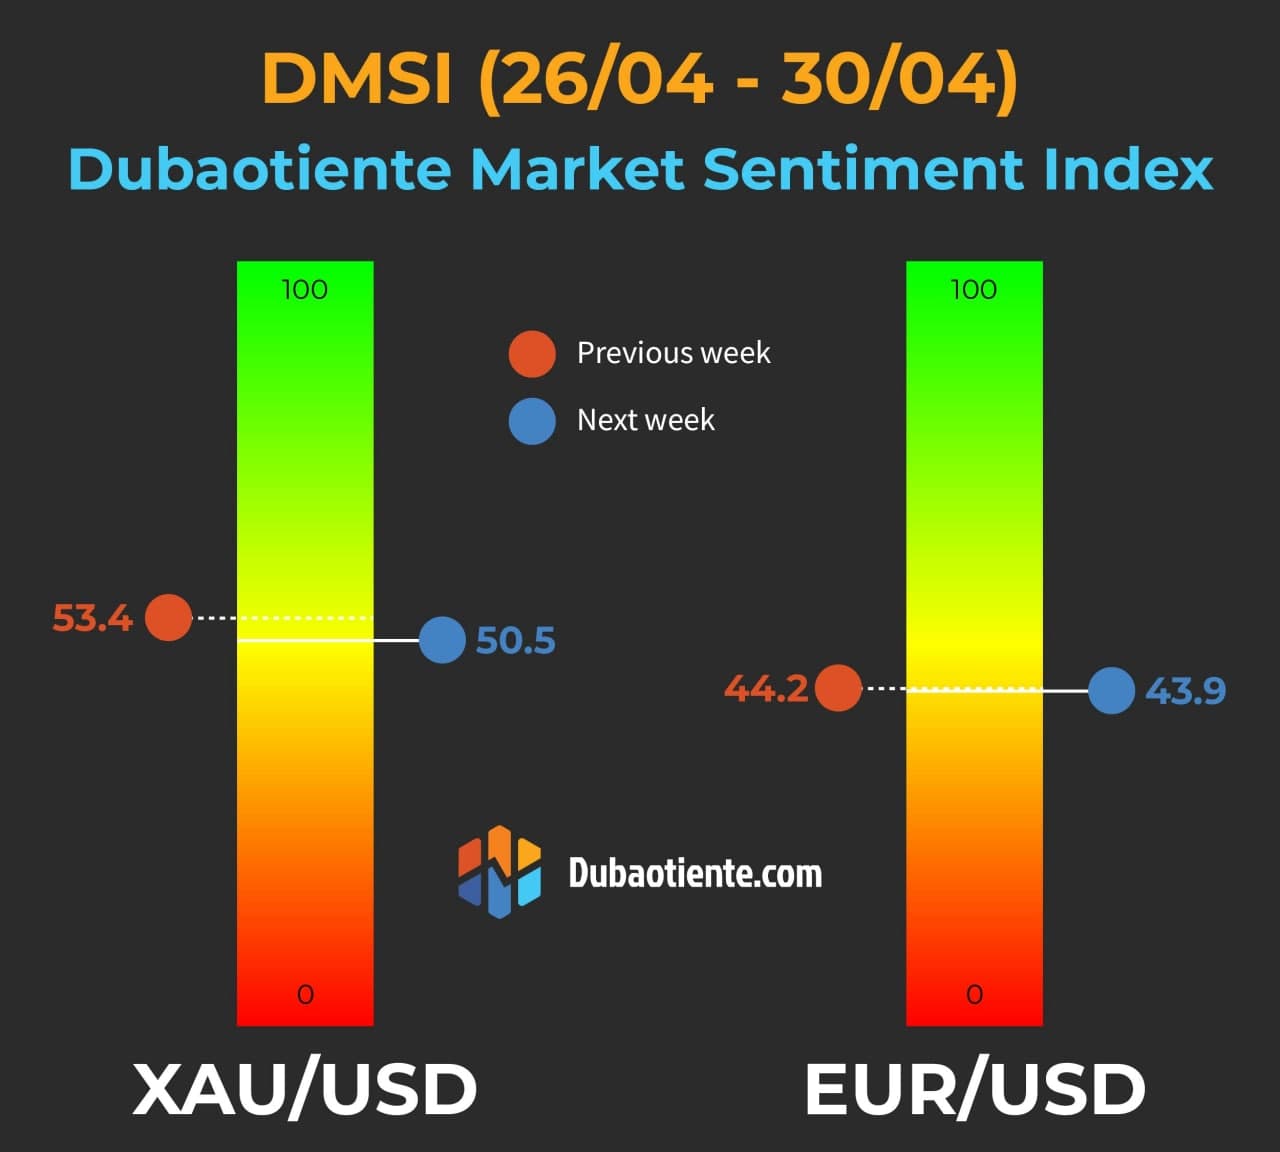 Chỉ số DMSI của Dubaotiente tuần 26/04 - 30/04.